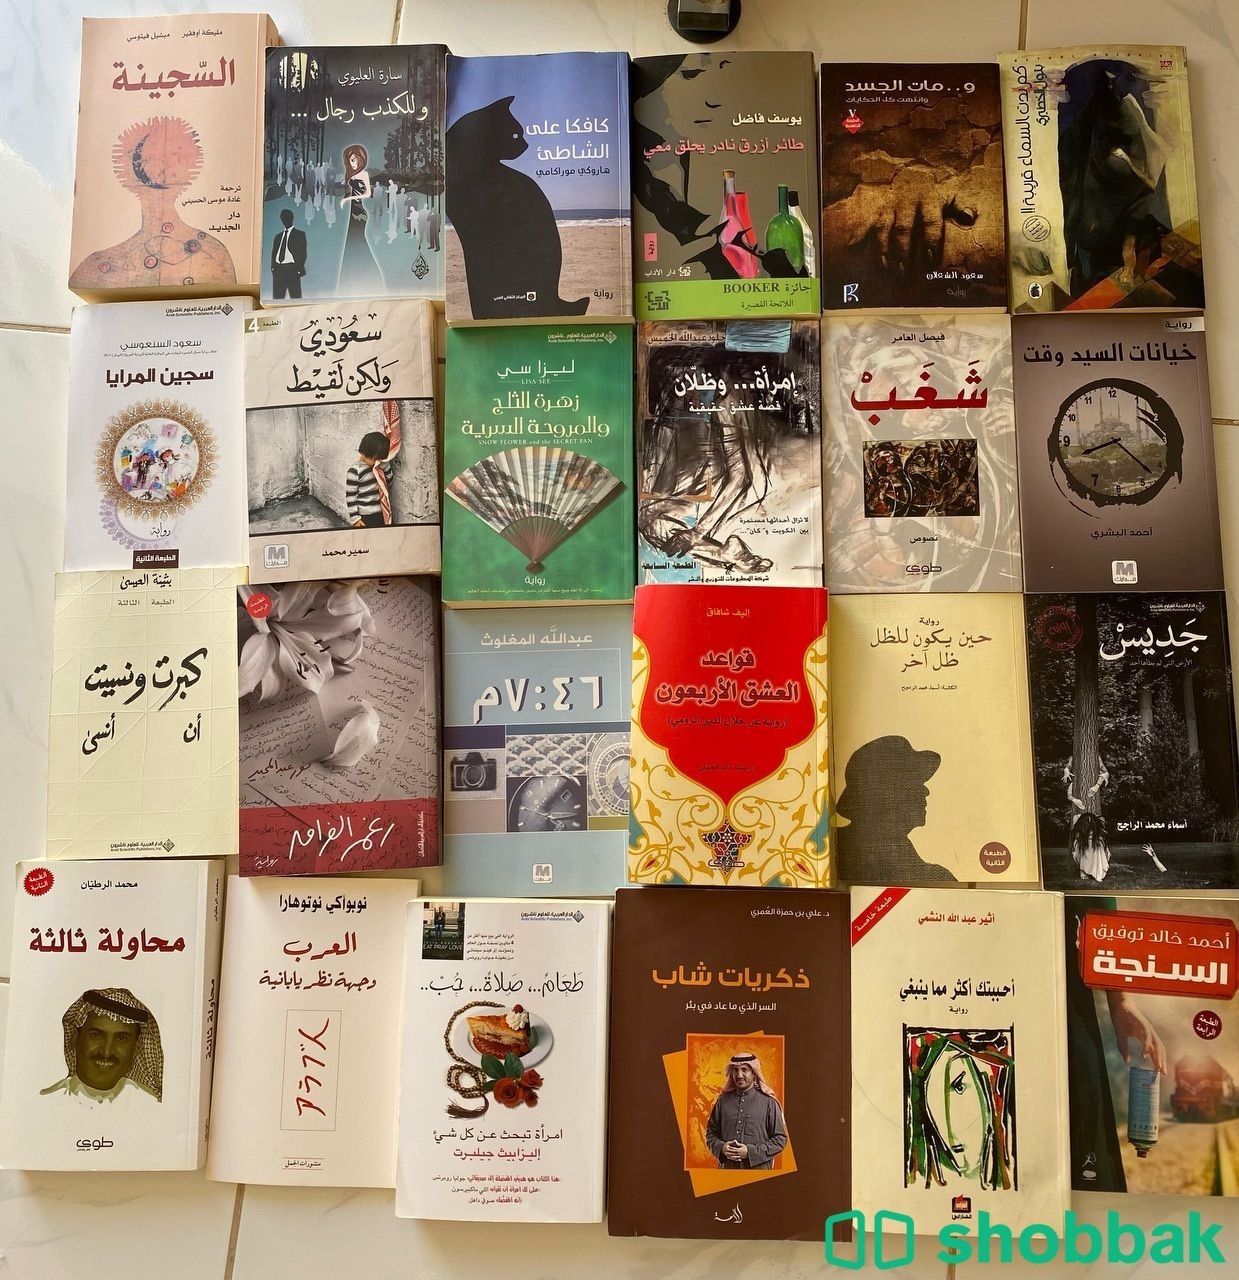 كتب و روايات عربية Shobbak Saudi Arabia